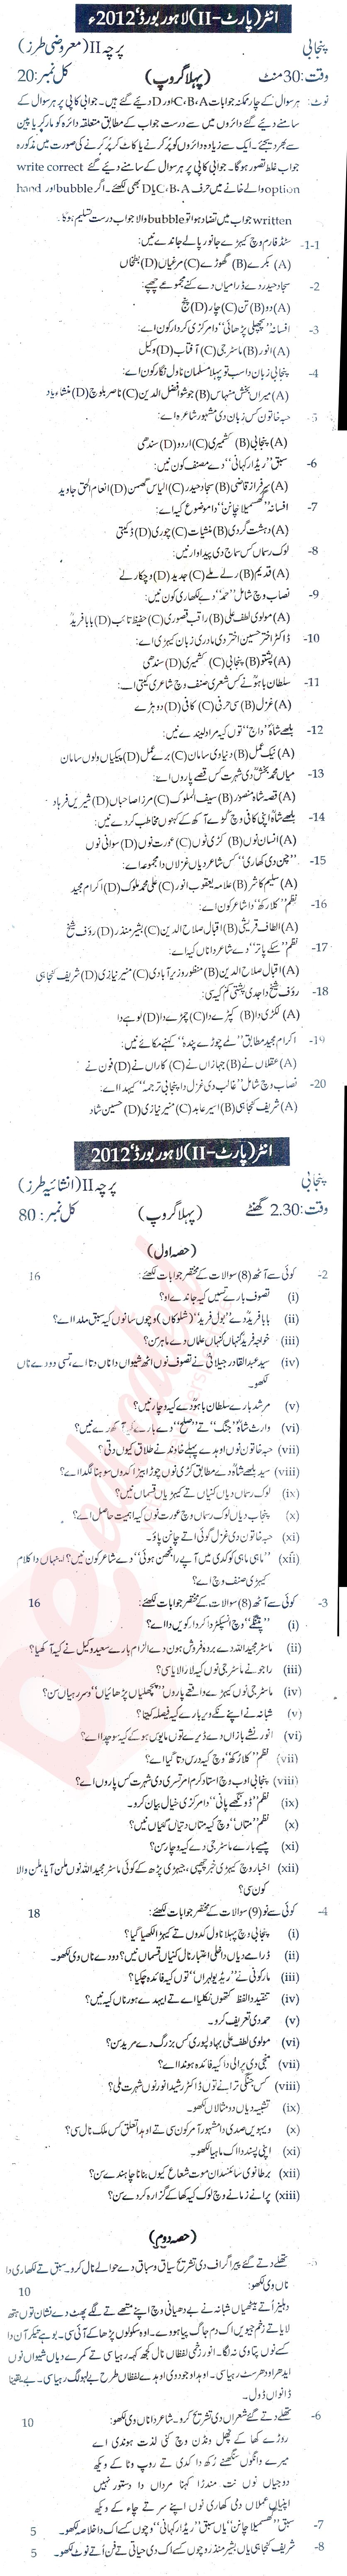 Punjabi FA Part 2 Past Paper Group 1 BISE Lahore 2012